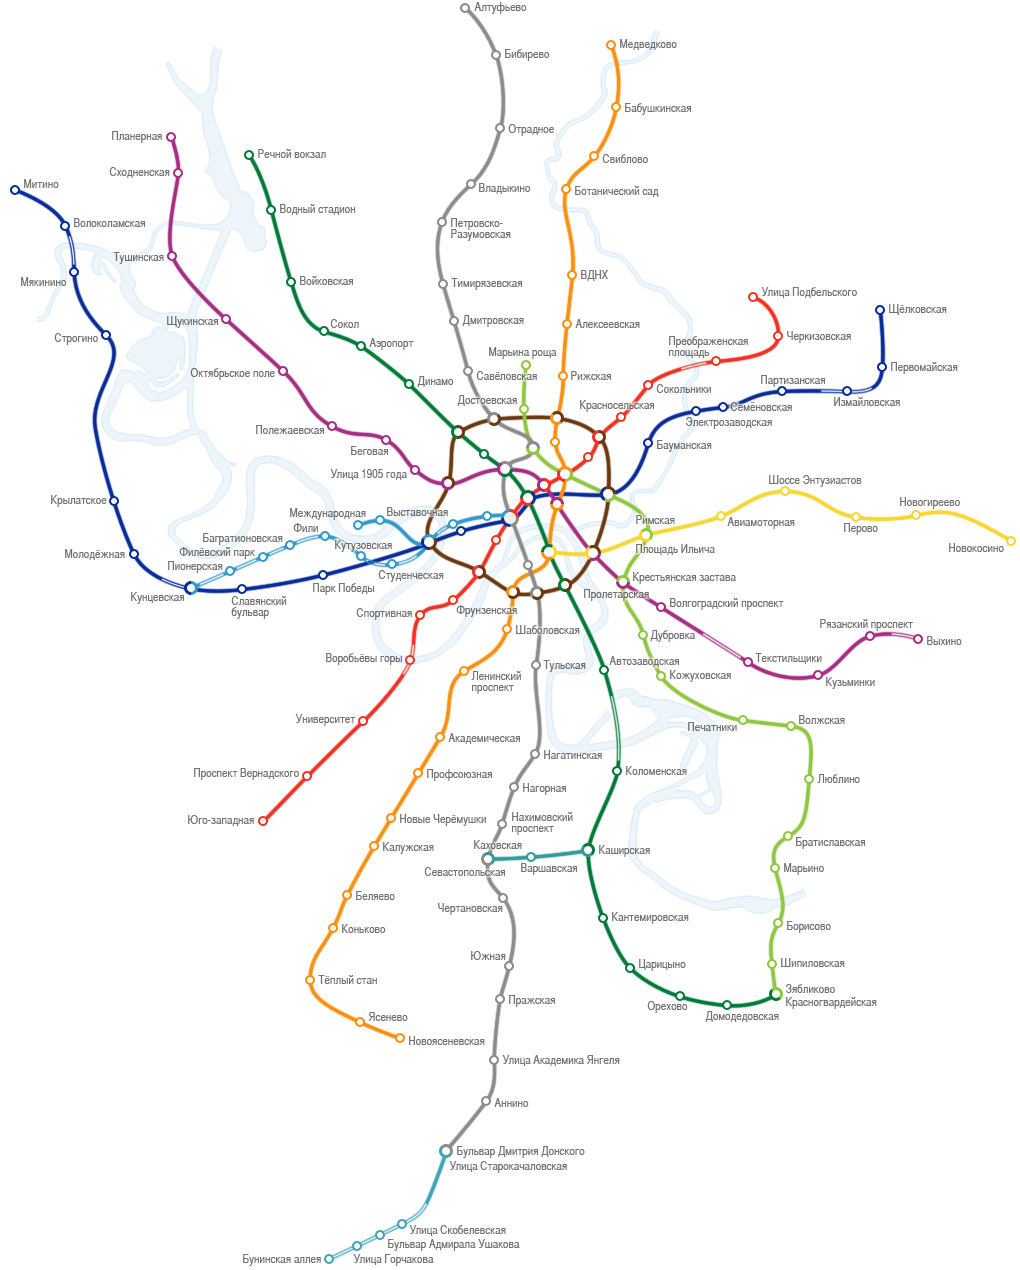 Карта метро Москвы — схема московского метро, на которой линии и станции расположены в соответствии с картой Москвы